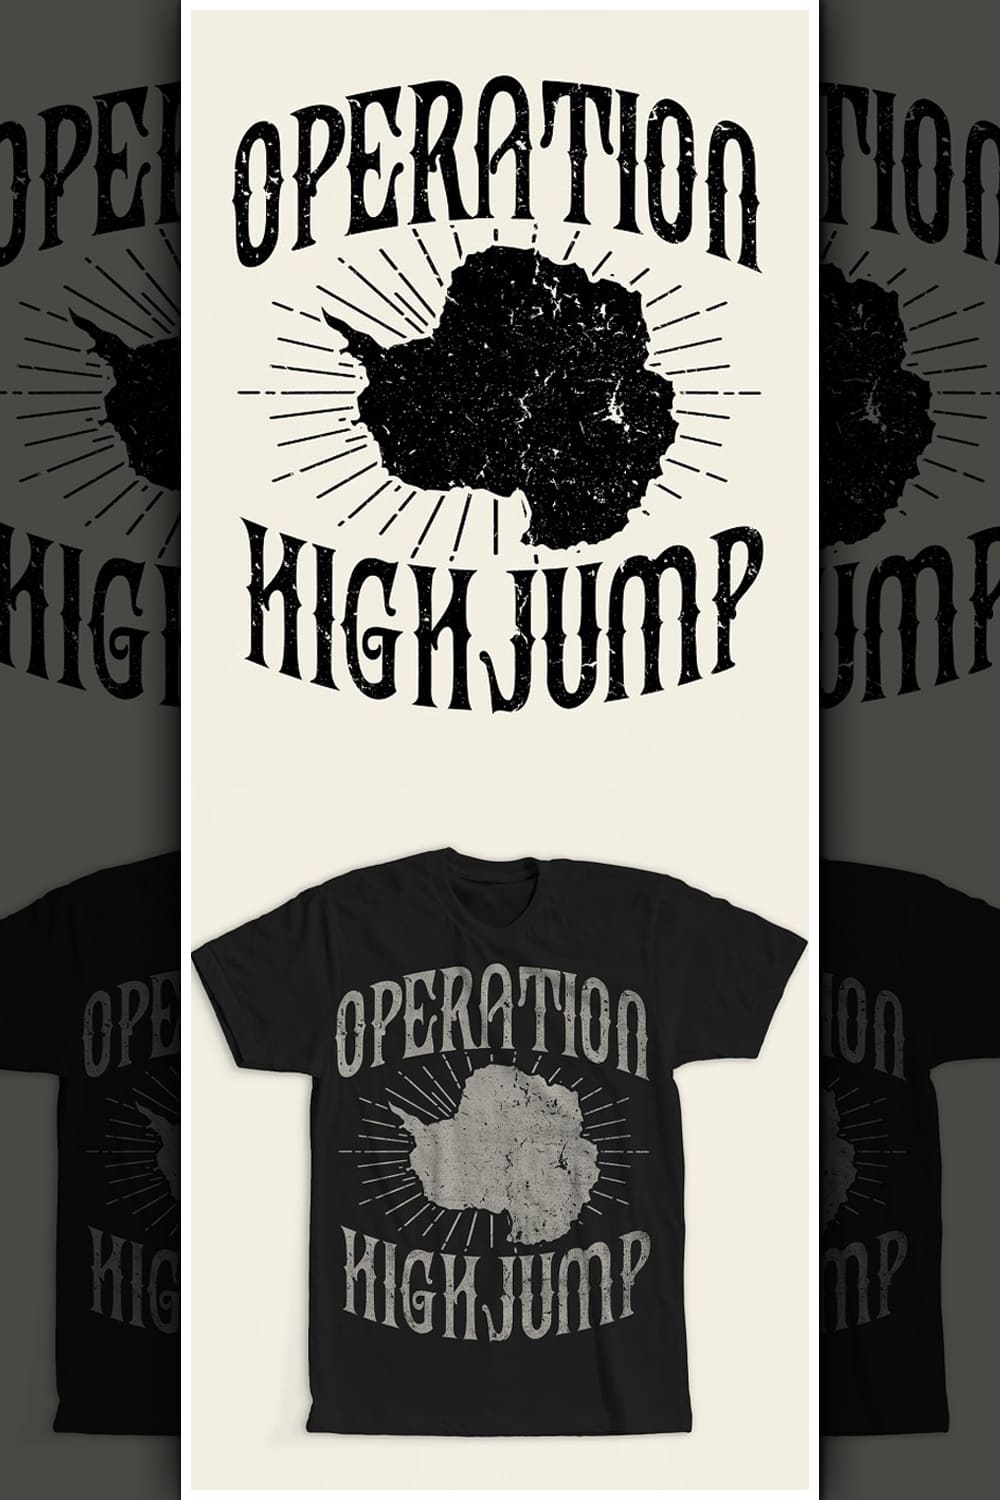 Operation High Jump T-Shirt Design - Pinterest.